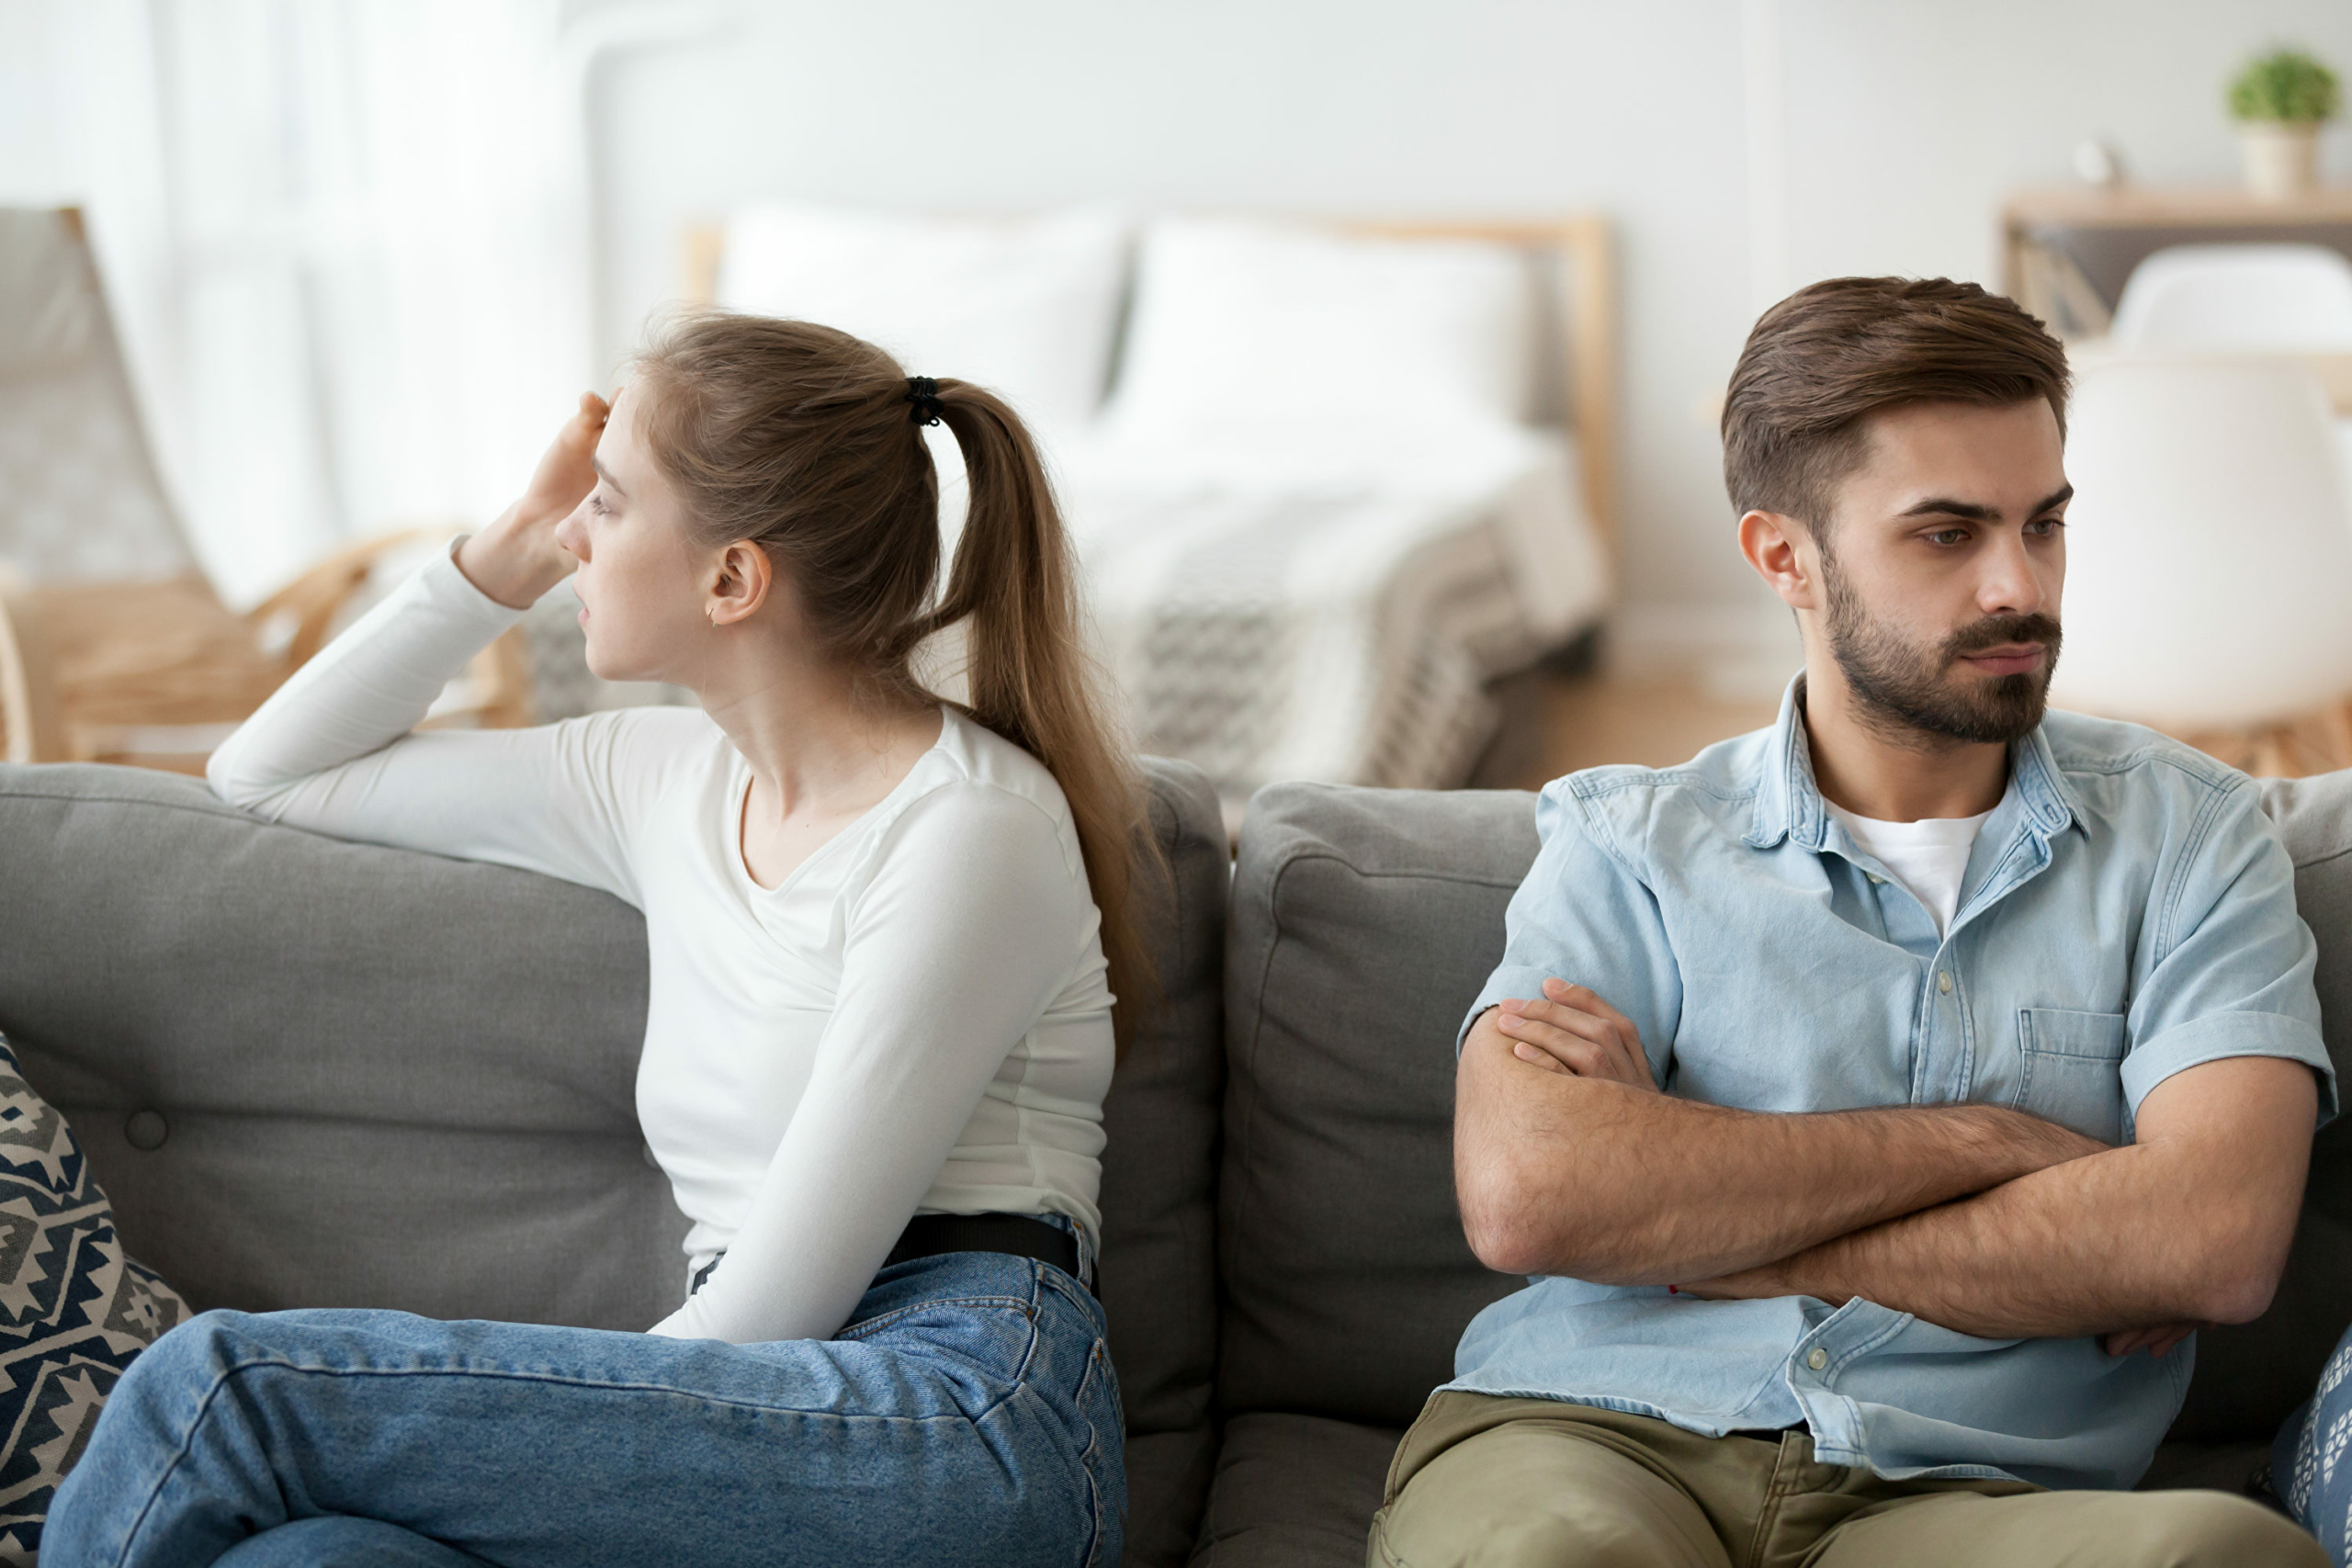 Vợ chồng hiểu nhau, khi xúc động nên lùi một bước, bình tĩnh rồi lại giao tiếp thì tình cảm mới có thể bền lâu. (Ảnh: Shutterstock)